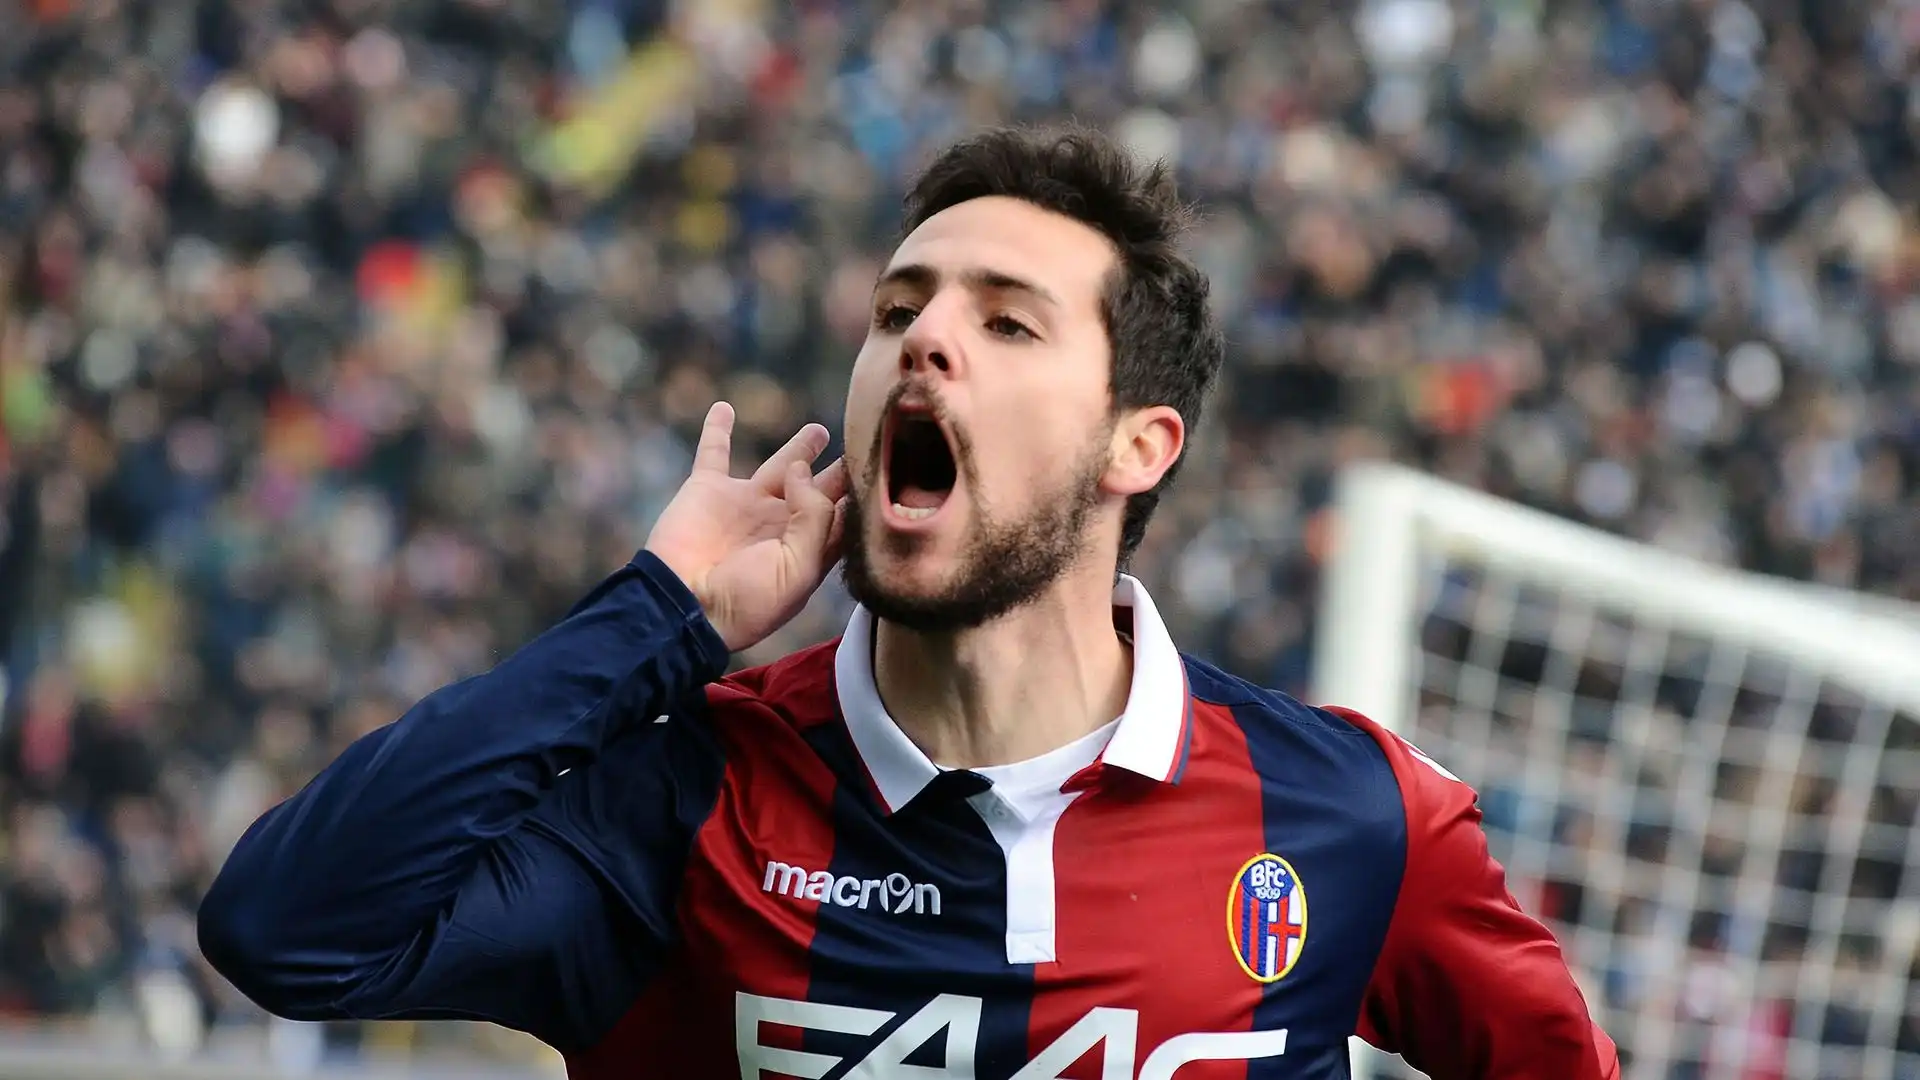 Il Bologna è il club nel quale ha collezionato più presenze: 112 con 29 gol